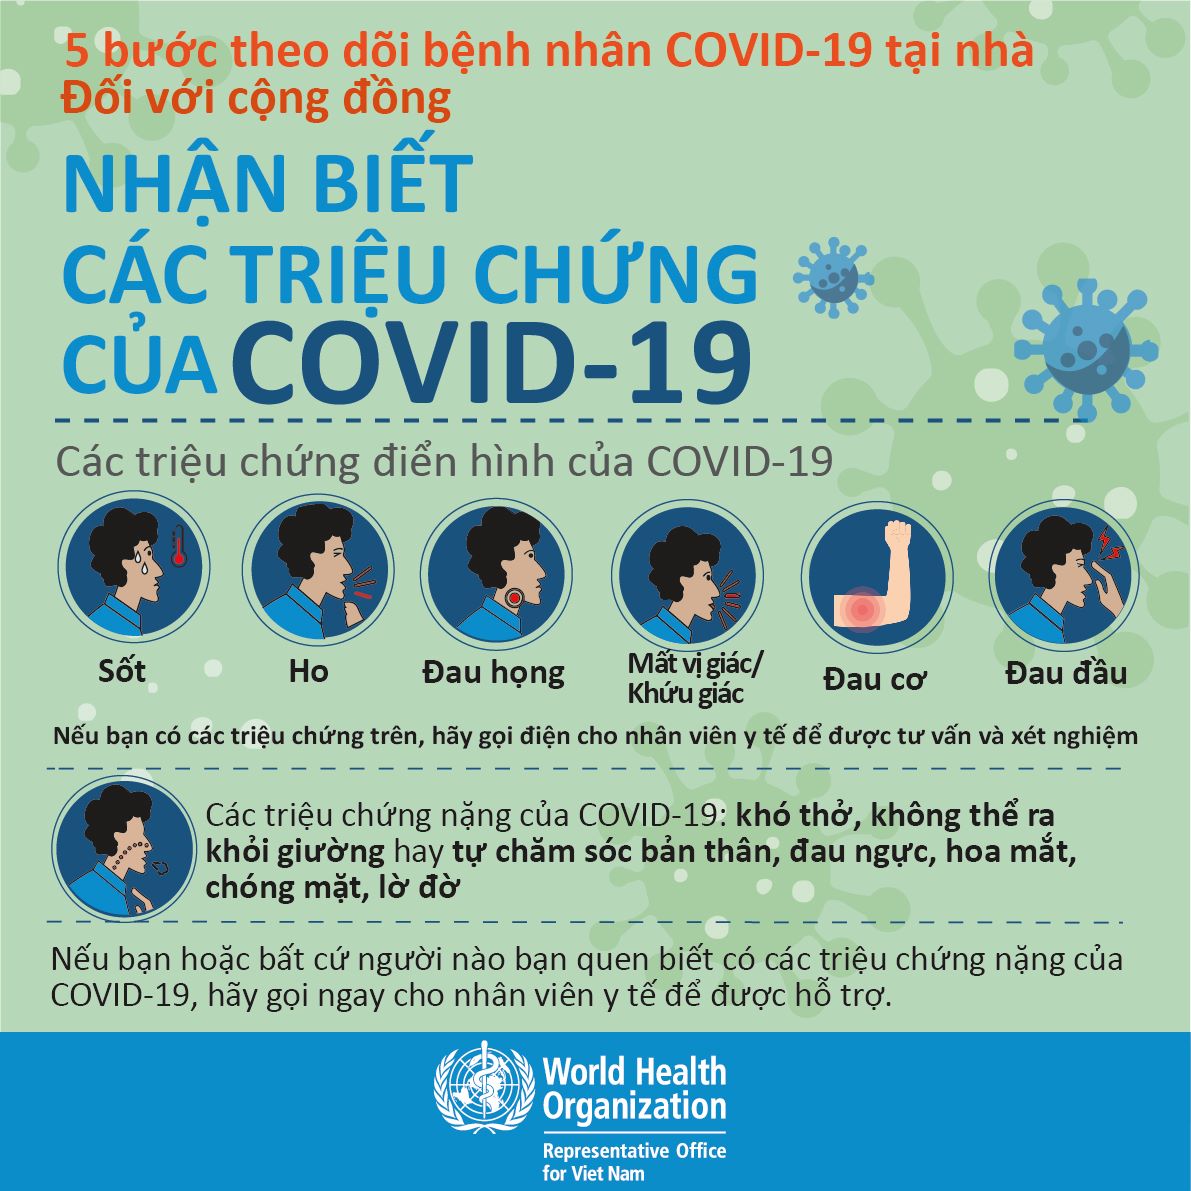 Hướng dẫn chăm sóc bệnh nhân COVID-19 tại nhà của Tổ chức Y tế thế giới (WHO)